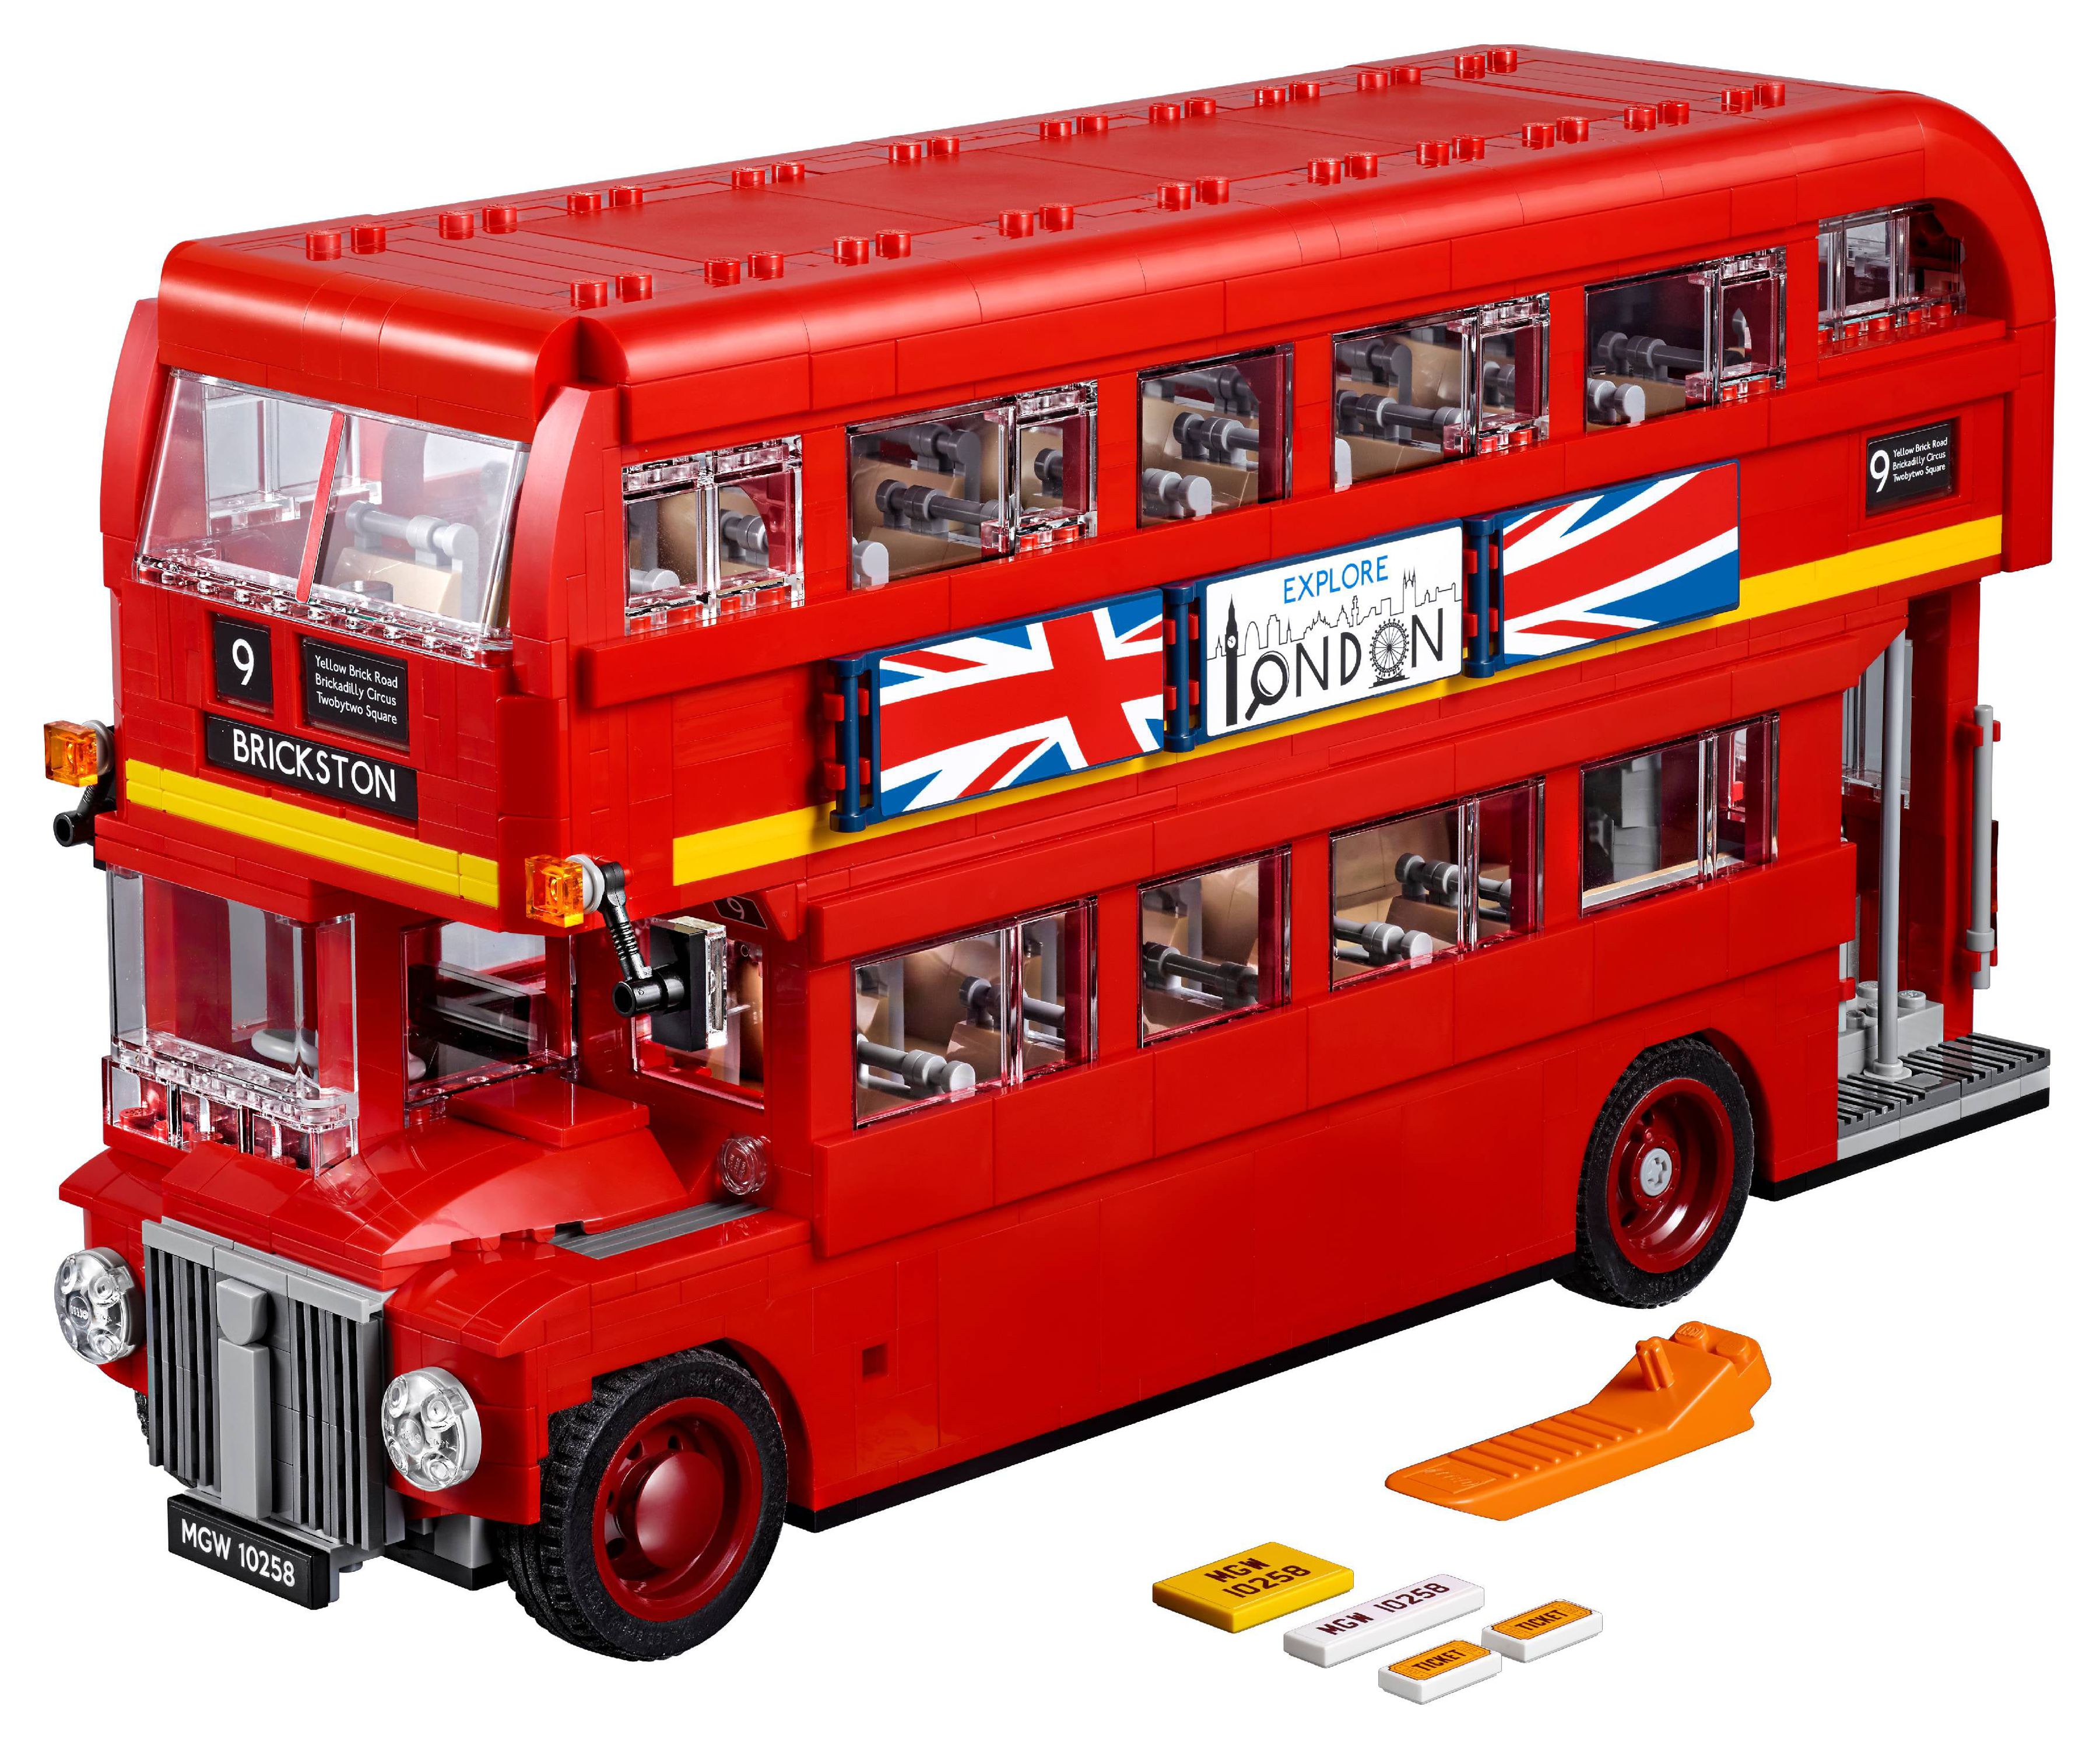 LEGO London Bus 10258 Building Set (1686 Pieces) - image 2 of 7